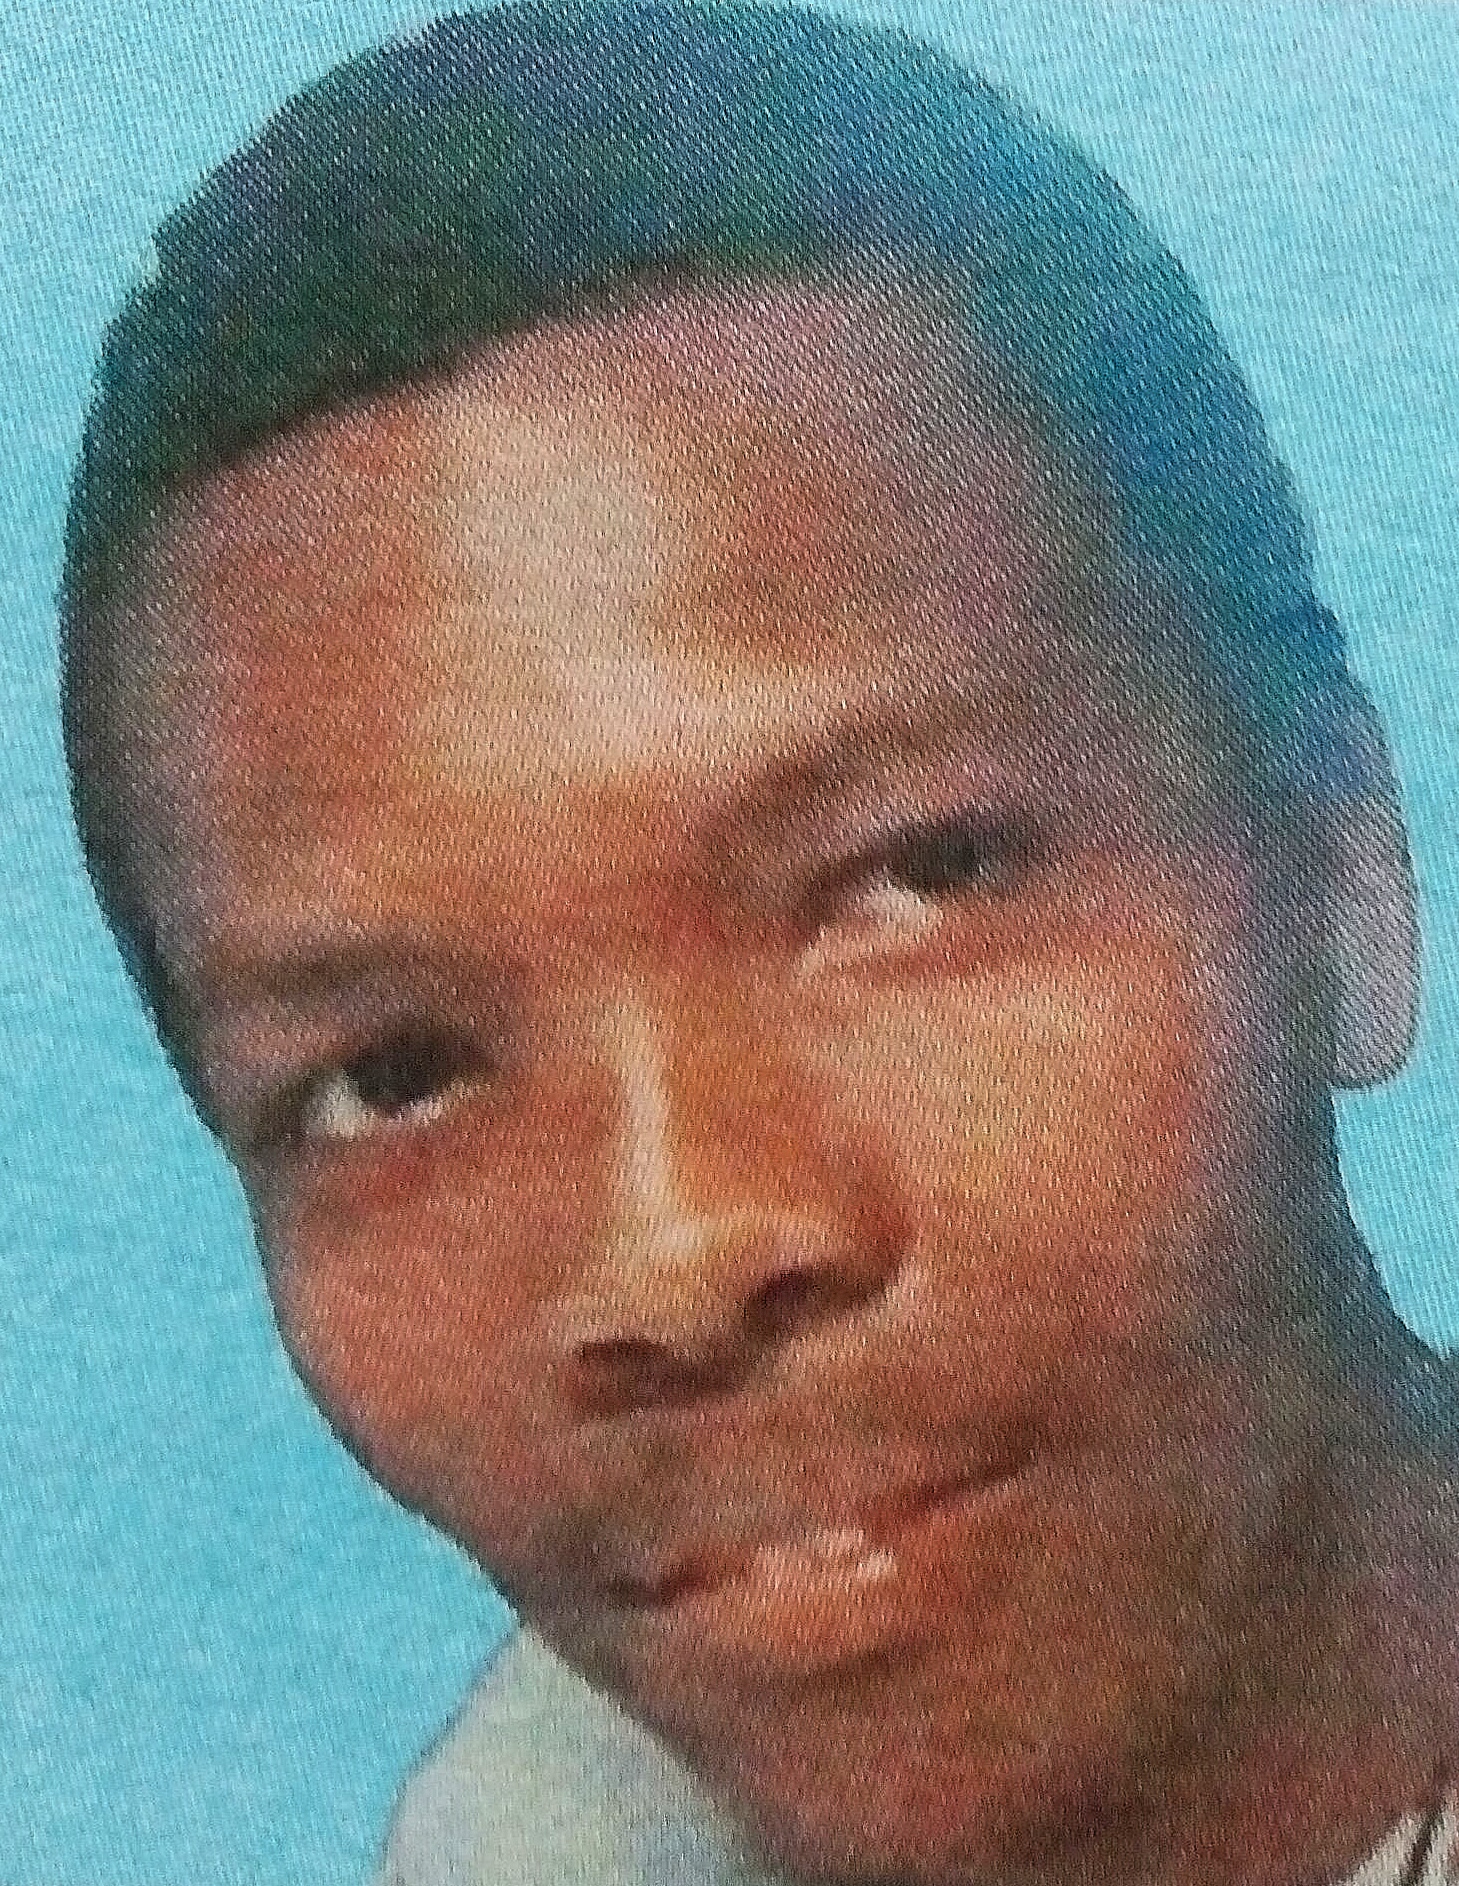 Obituary Image of Dennis Kori Nyaga